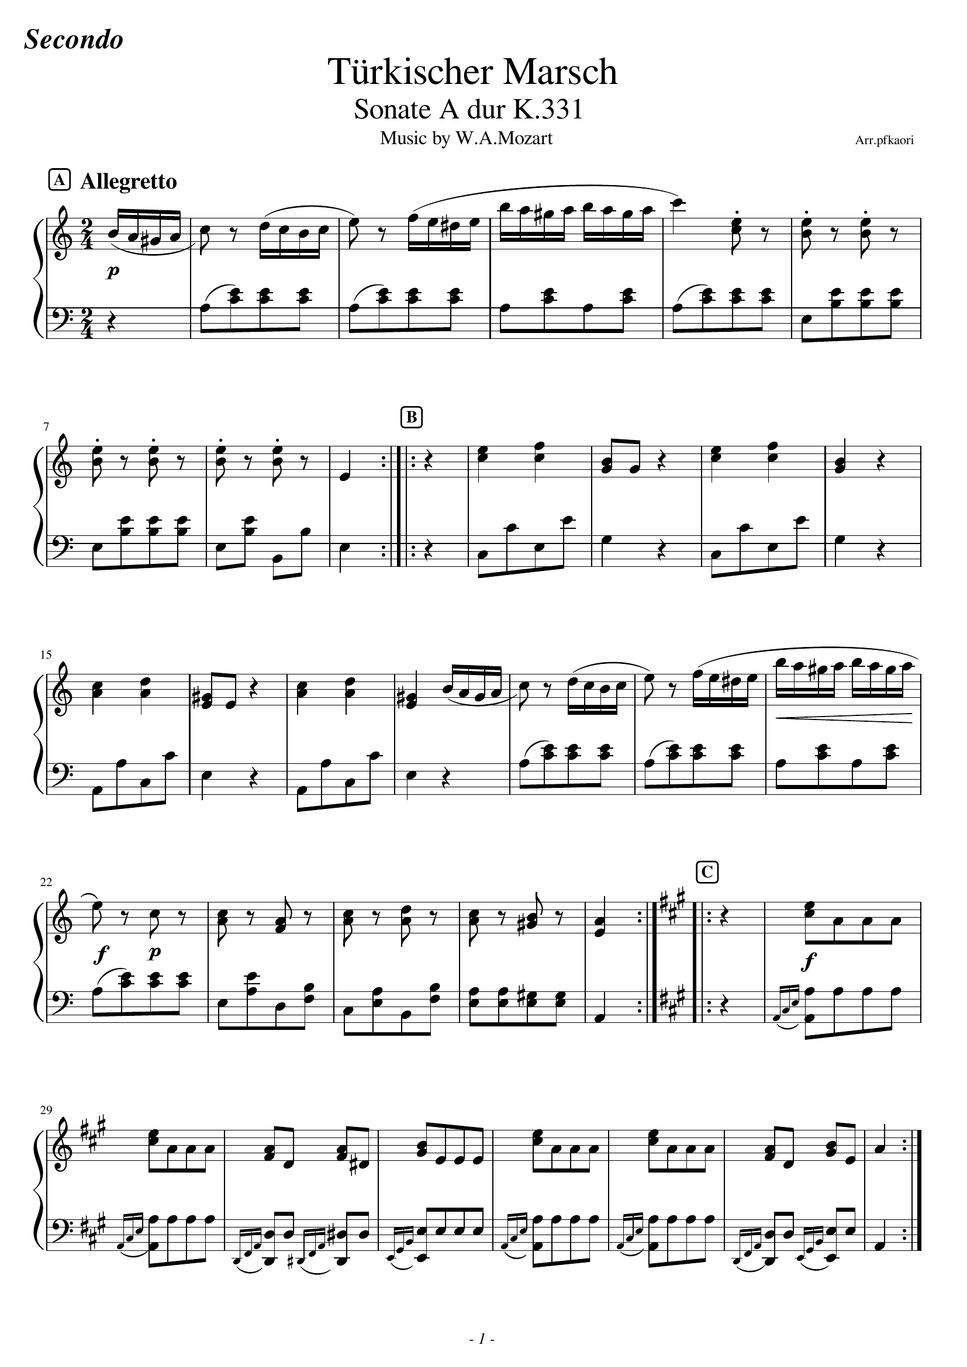 モーツァルト - トルコ行進曲 (パート譜・ピアノ連弾初級/先生と生徒ver) by pfkaori